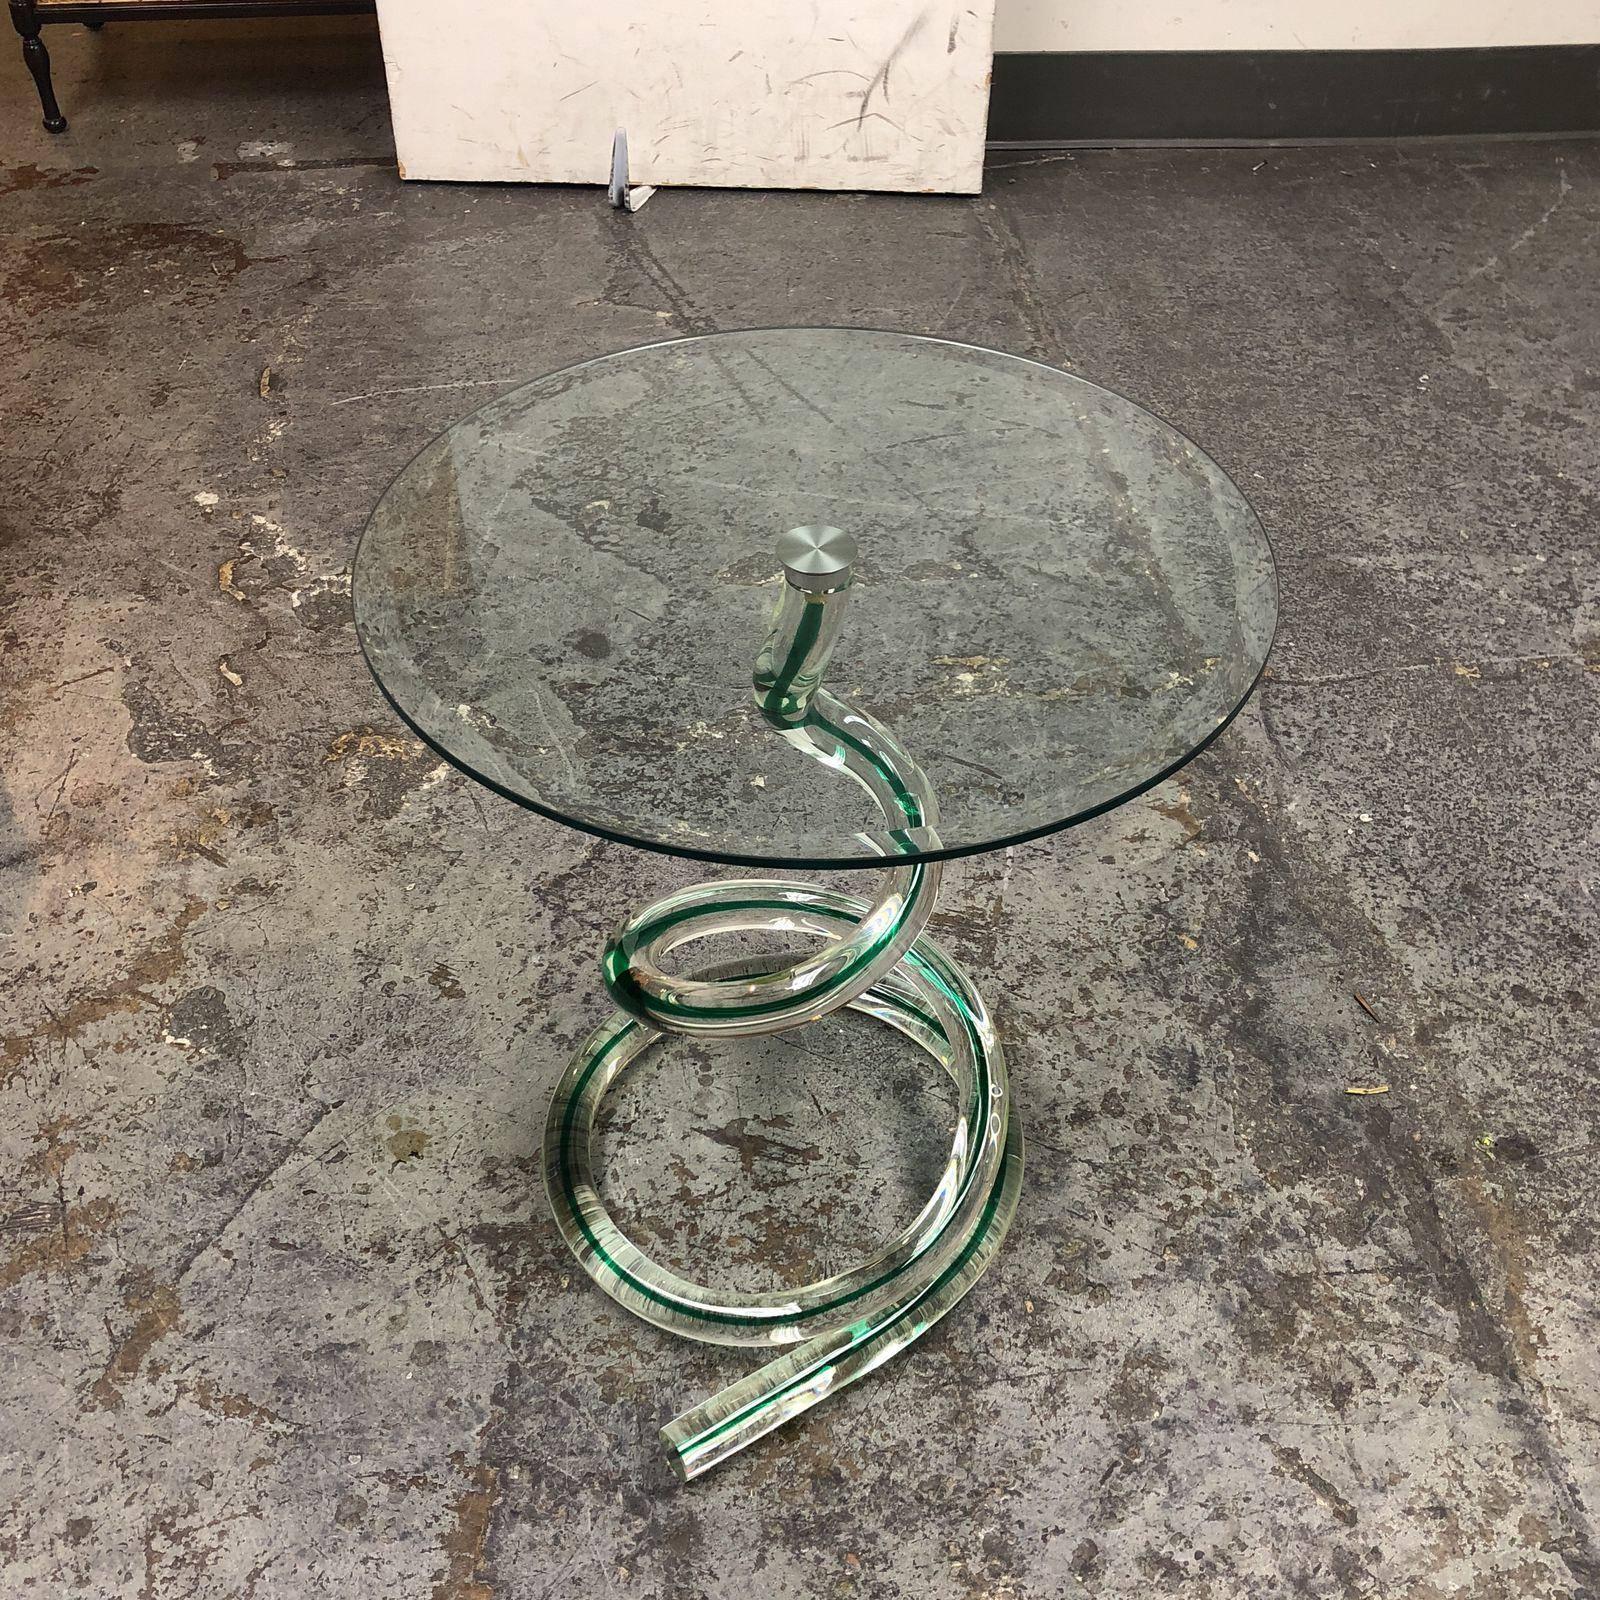 Table d'appoint Ghibli en verre Murano de Roche Bobois. Une brillante veine verte tourbillonne dans le serpentin en verre massif qui constitue la base de la table, surmonté d'un verre rond biseauté.
 
 